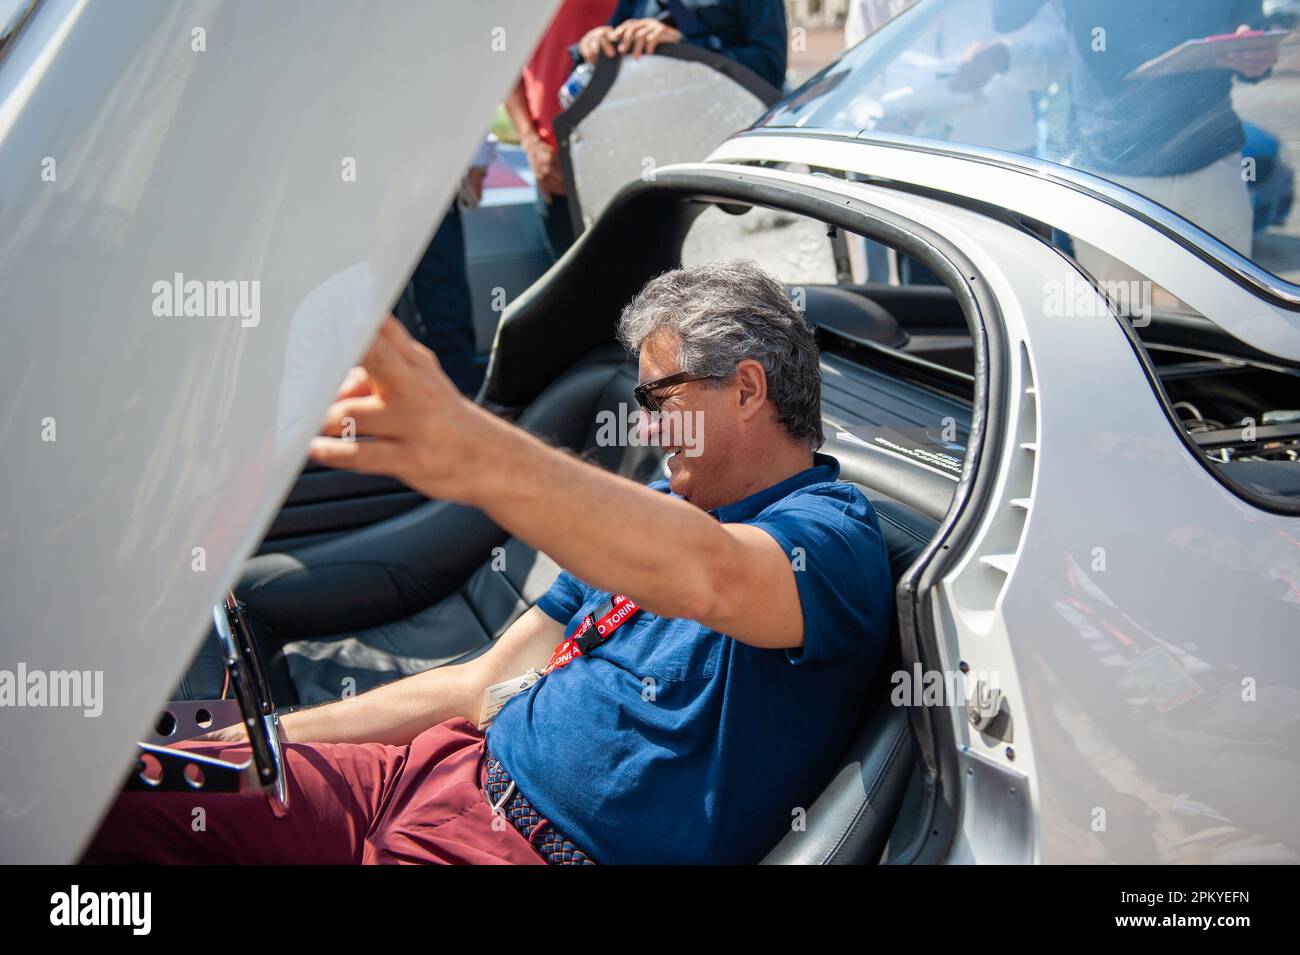 06/22/2019 Fabrizio Giugiaro in the driver's seat of the Chevrolet Corvair Testudo Stock Photo